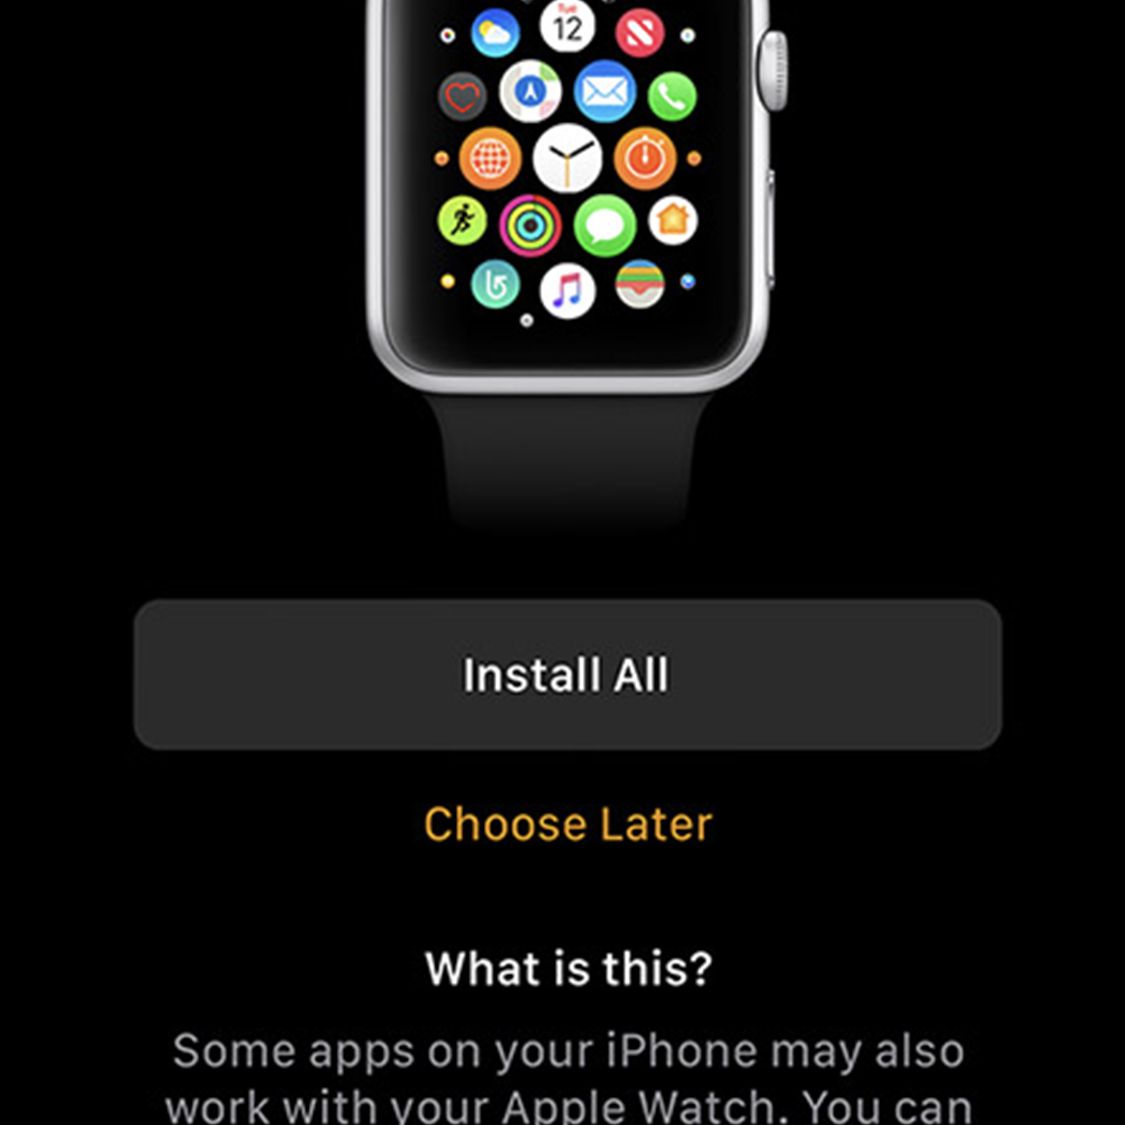 Obrazovka nabízející možnosti instalace aplikací na Apple Watch